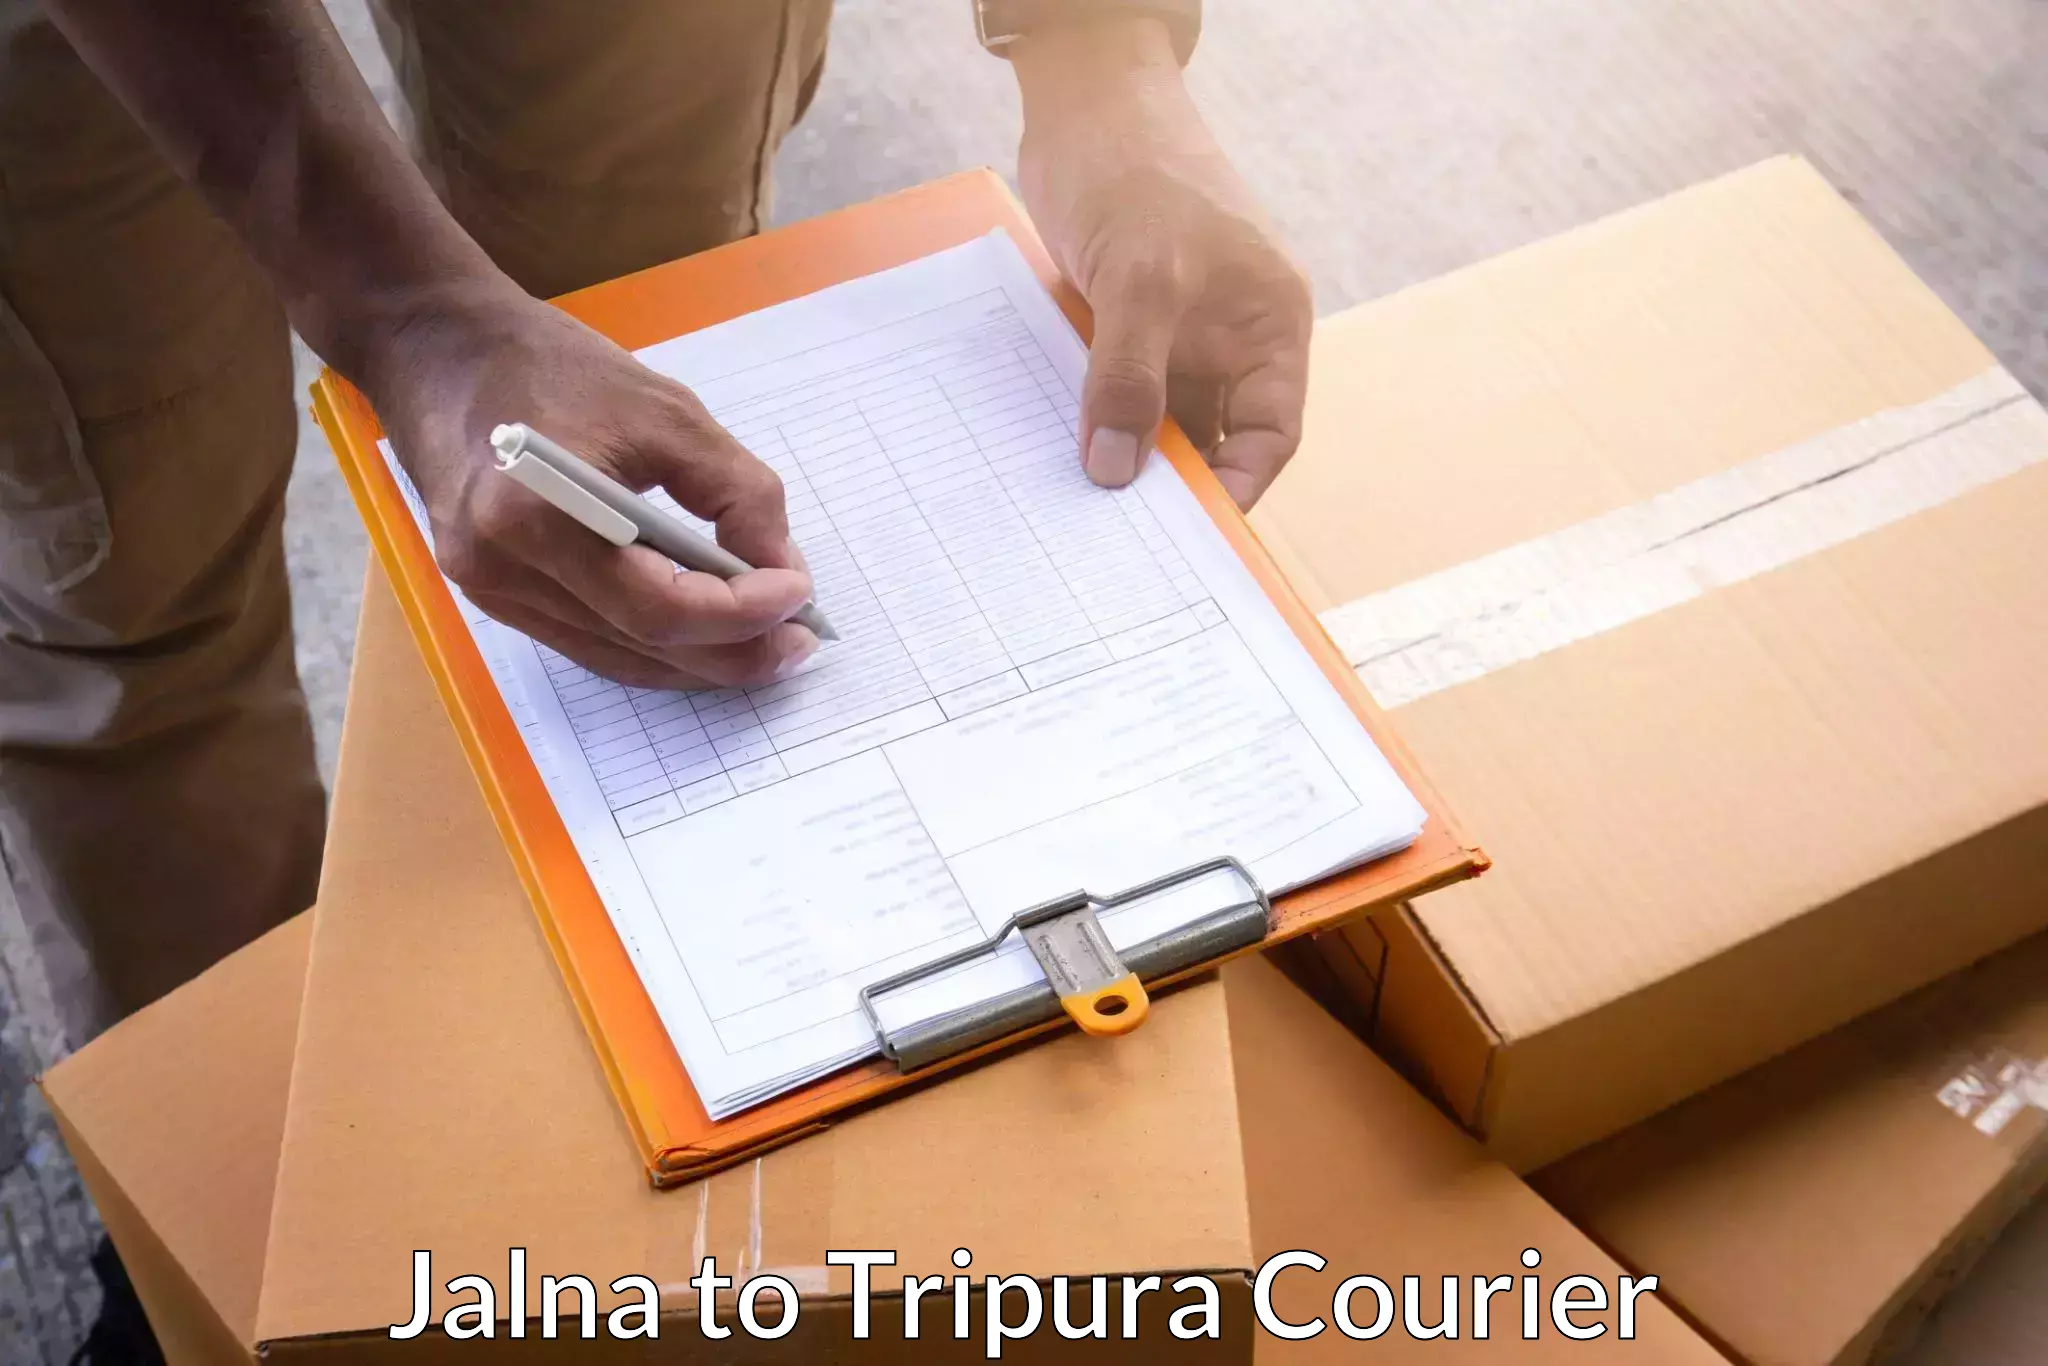 Specialized shipment handling Jalna to Tripura